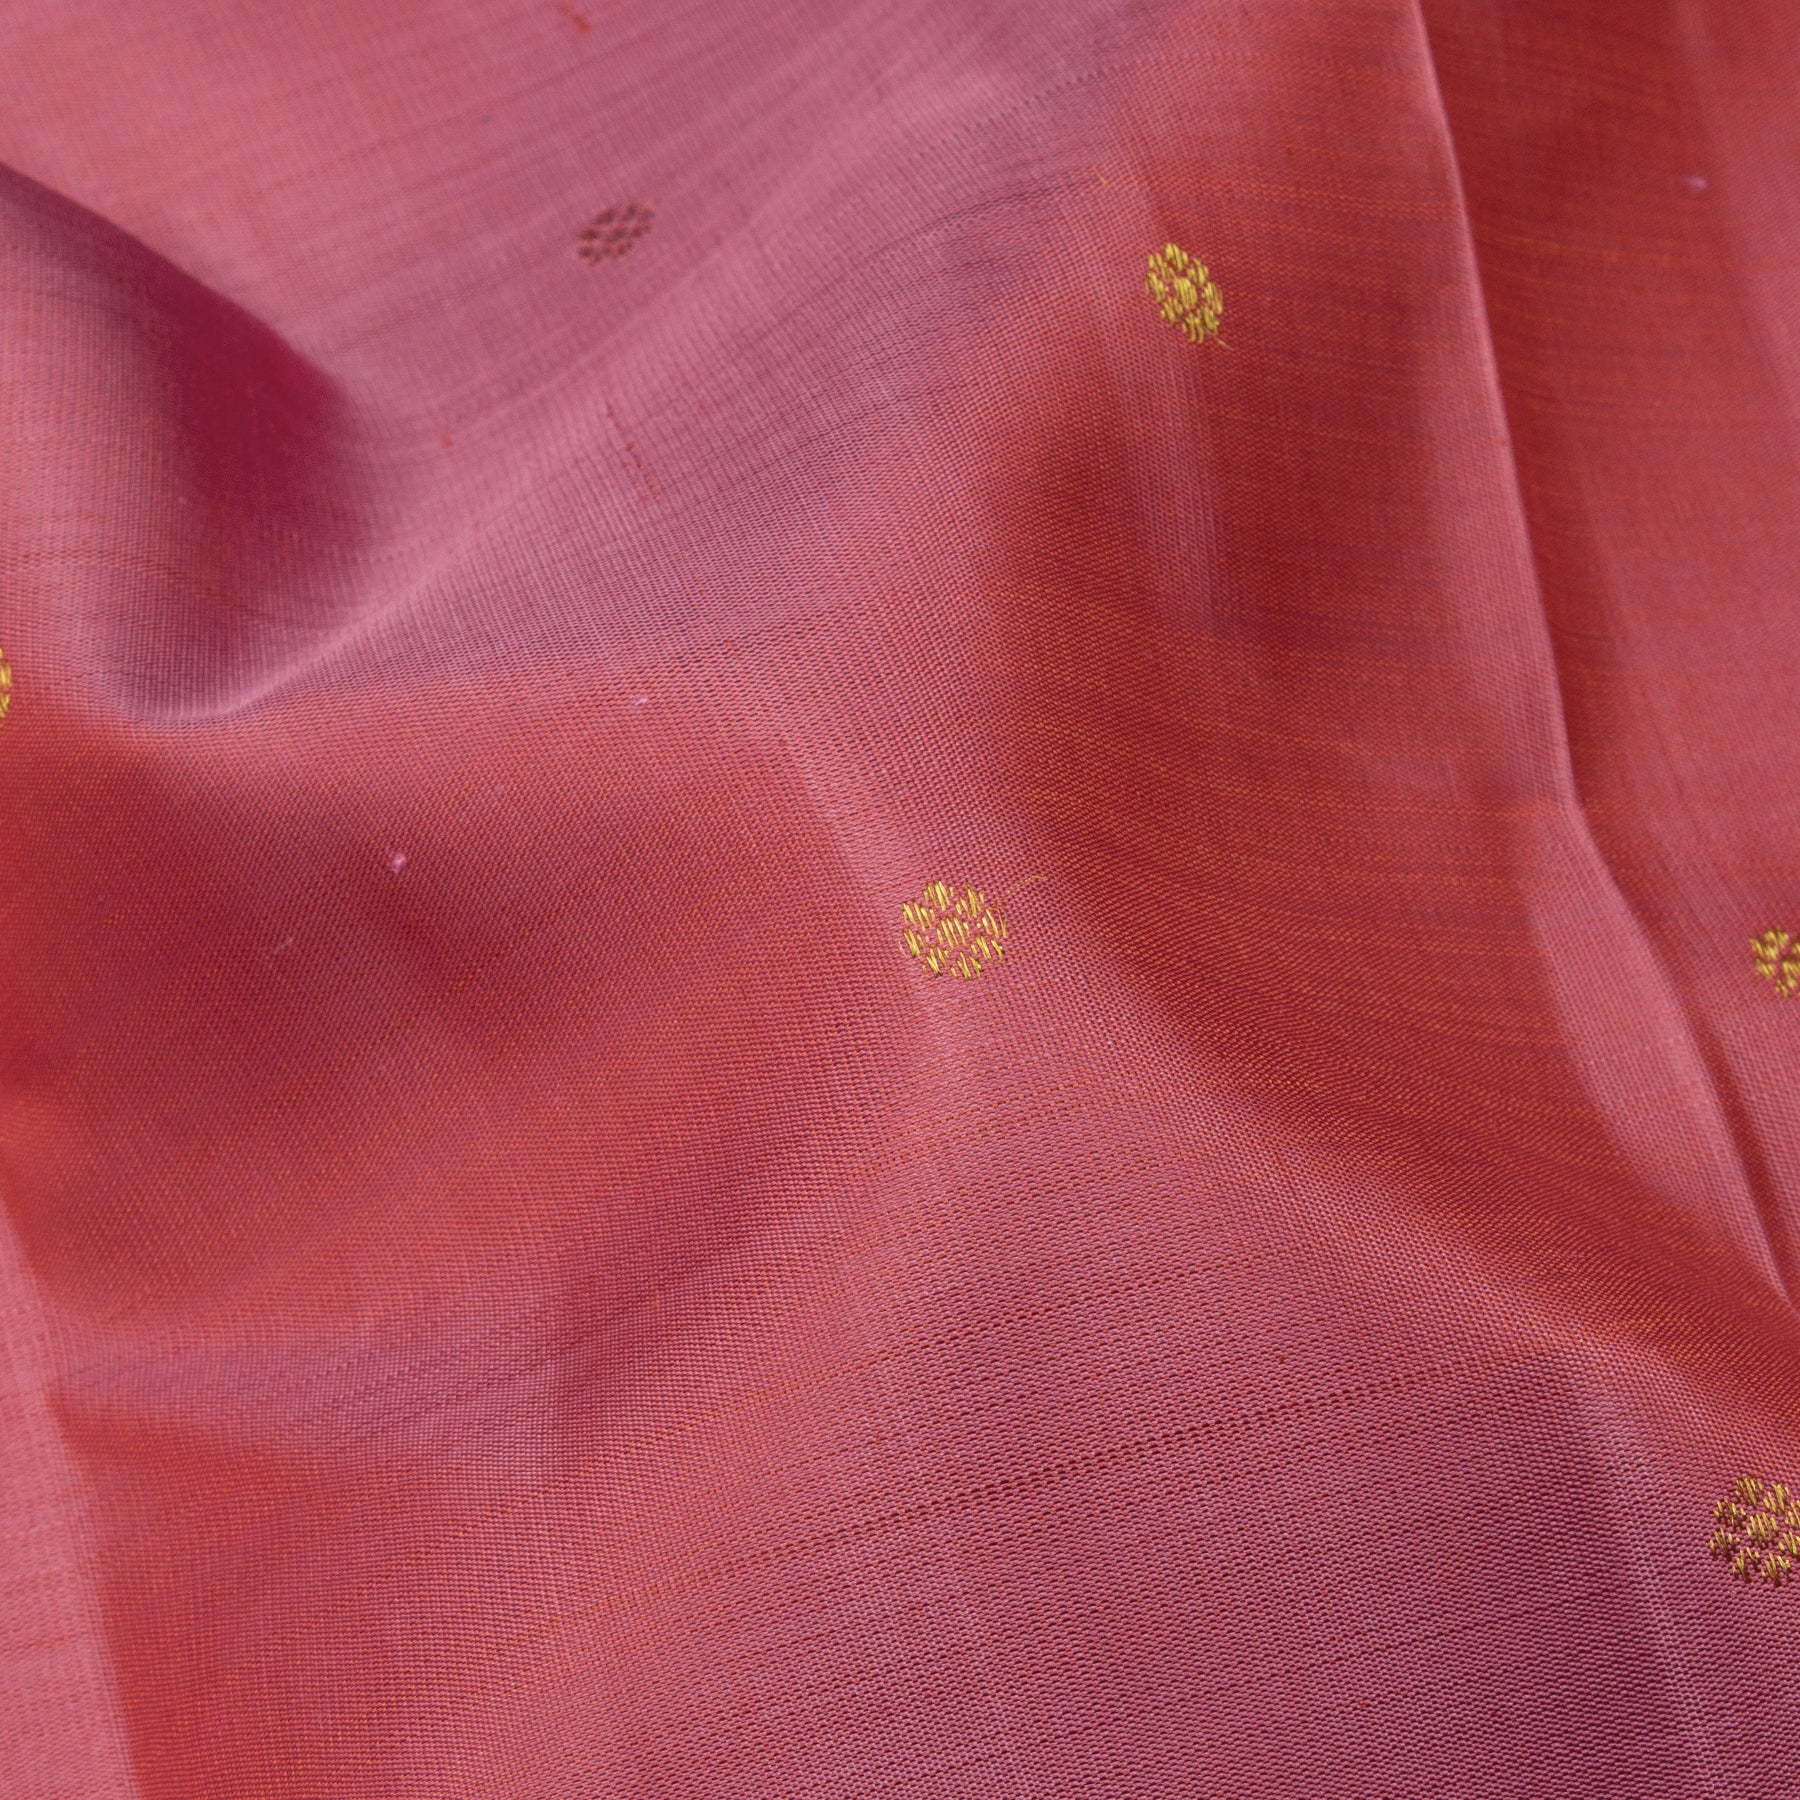 Kanakavalli Kanjivaram Silk Sari 23-611-HS001-13349 - Fabric View